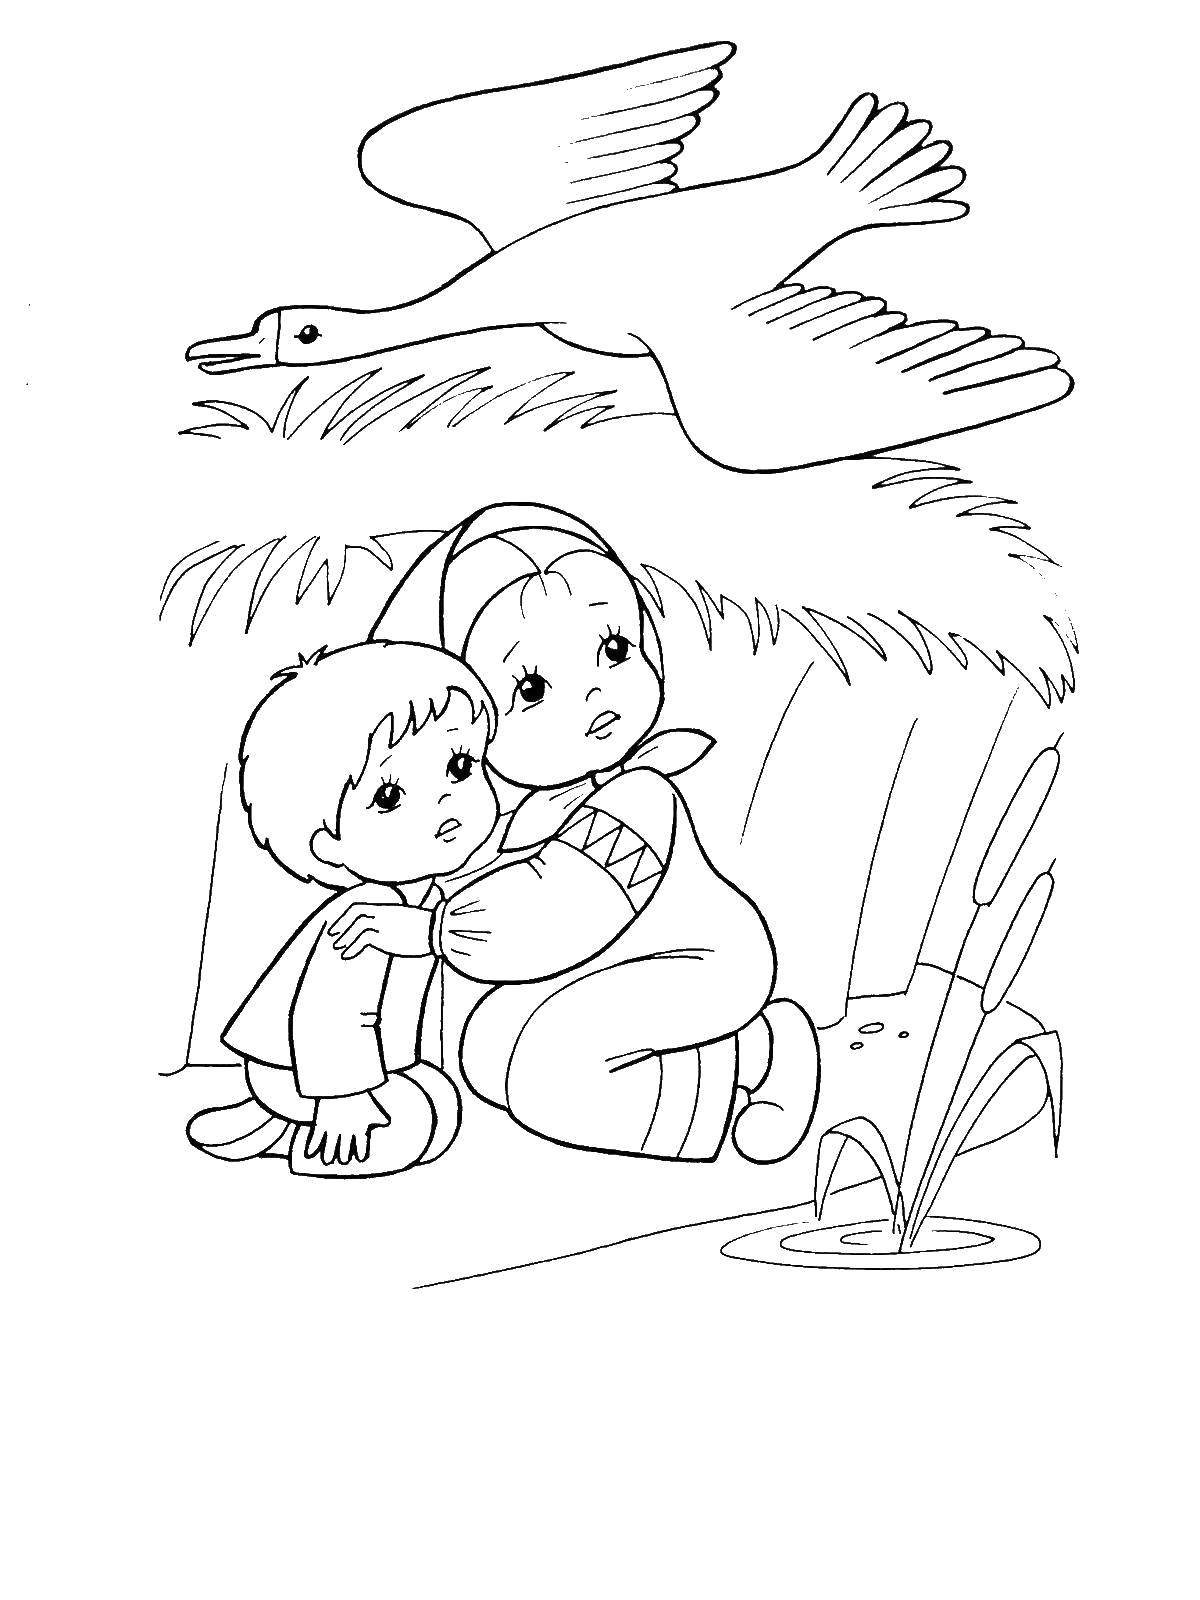 Раскраска по сказке гуси лебеди для детей